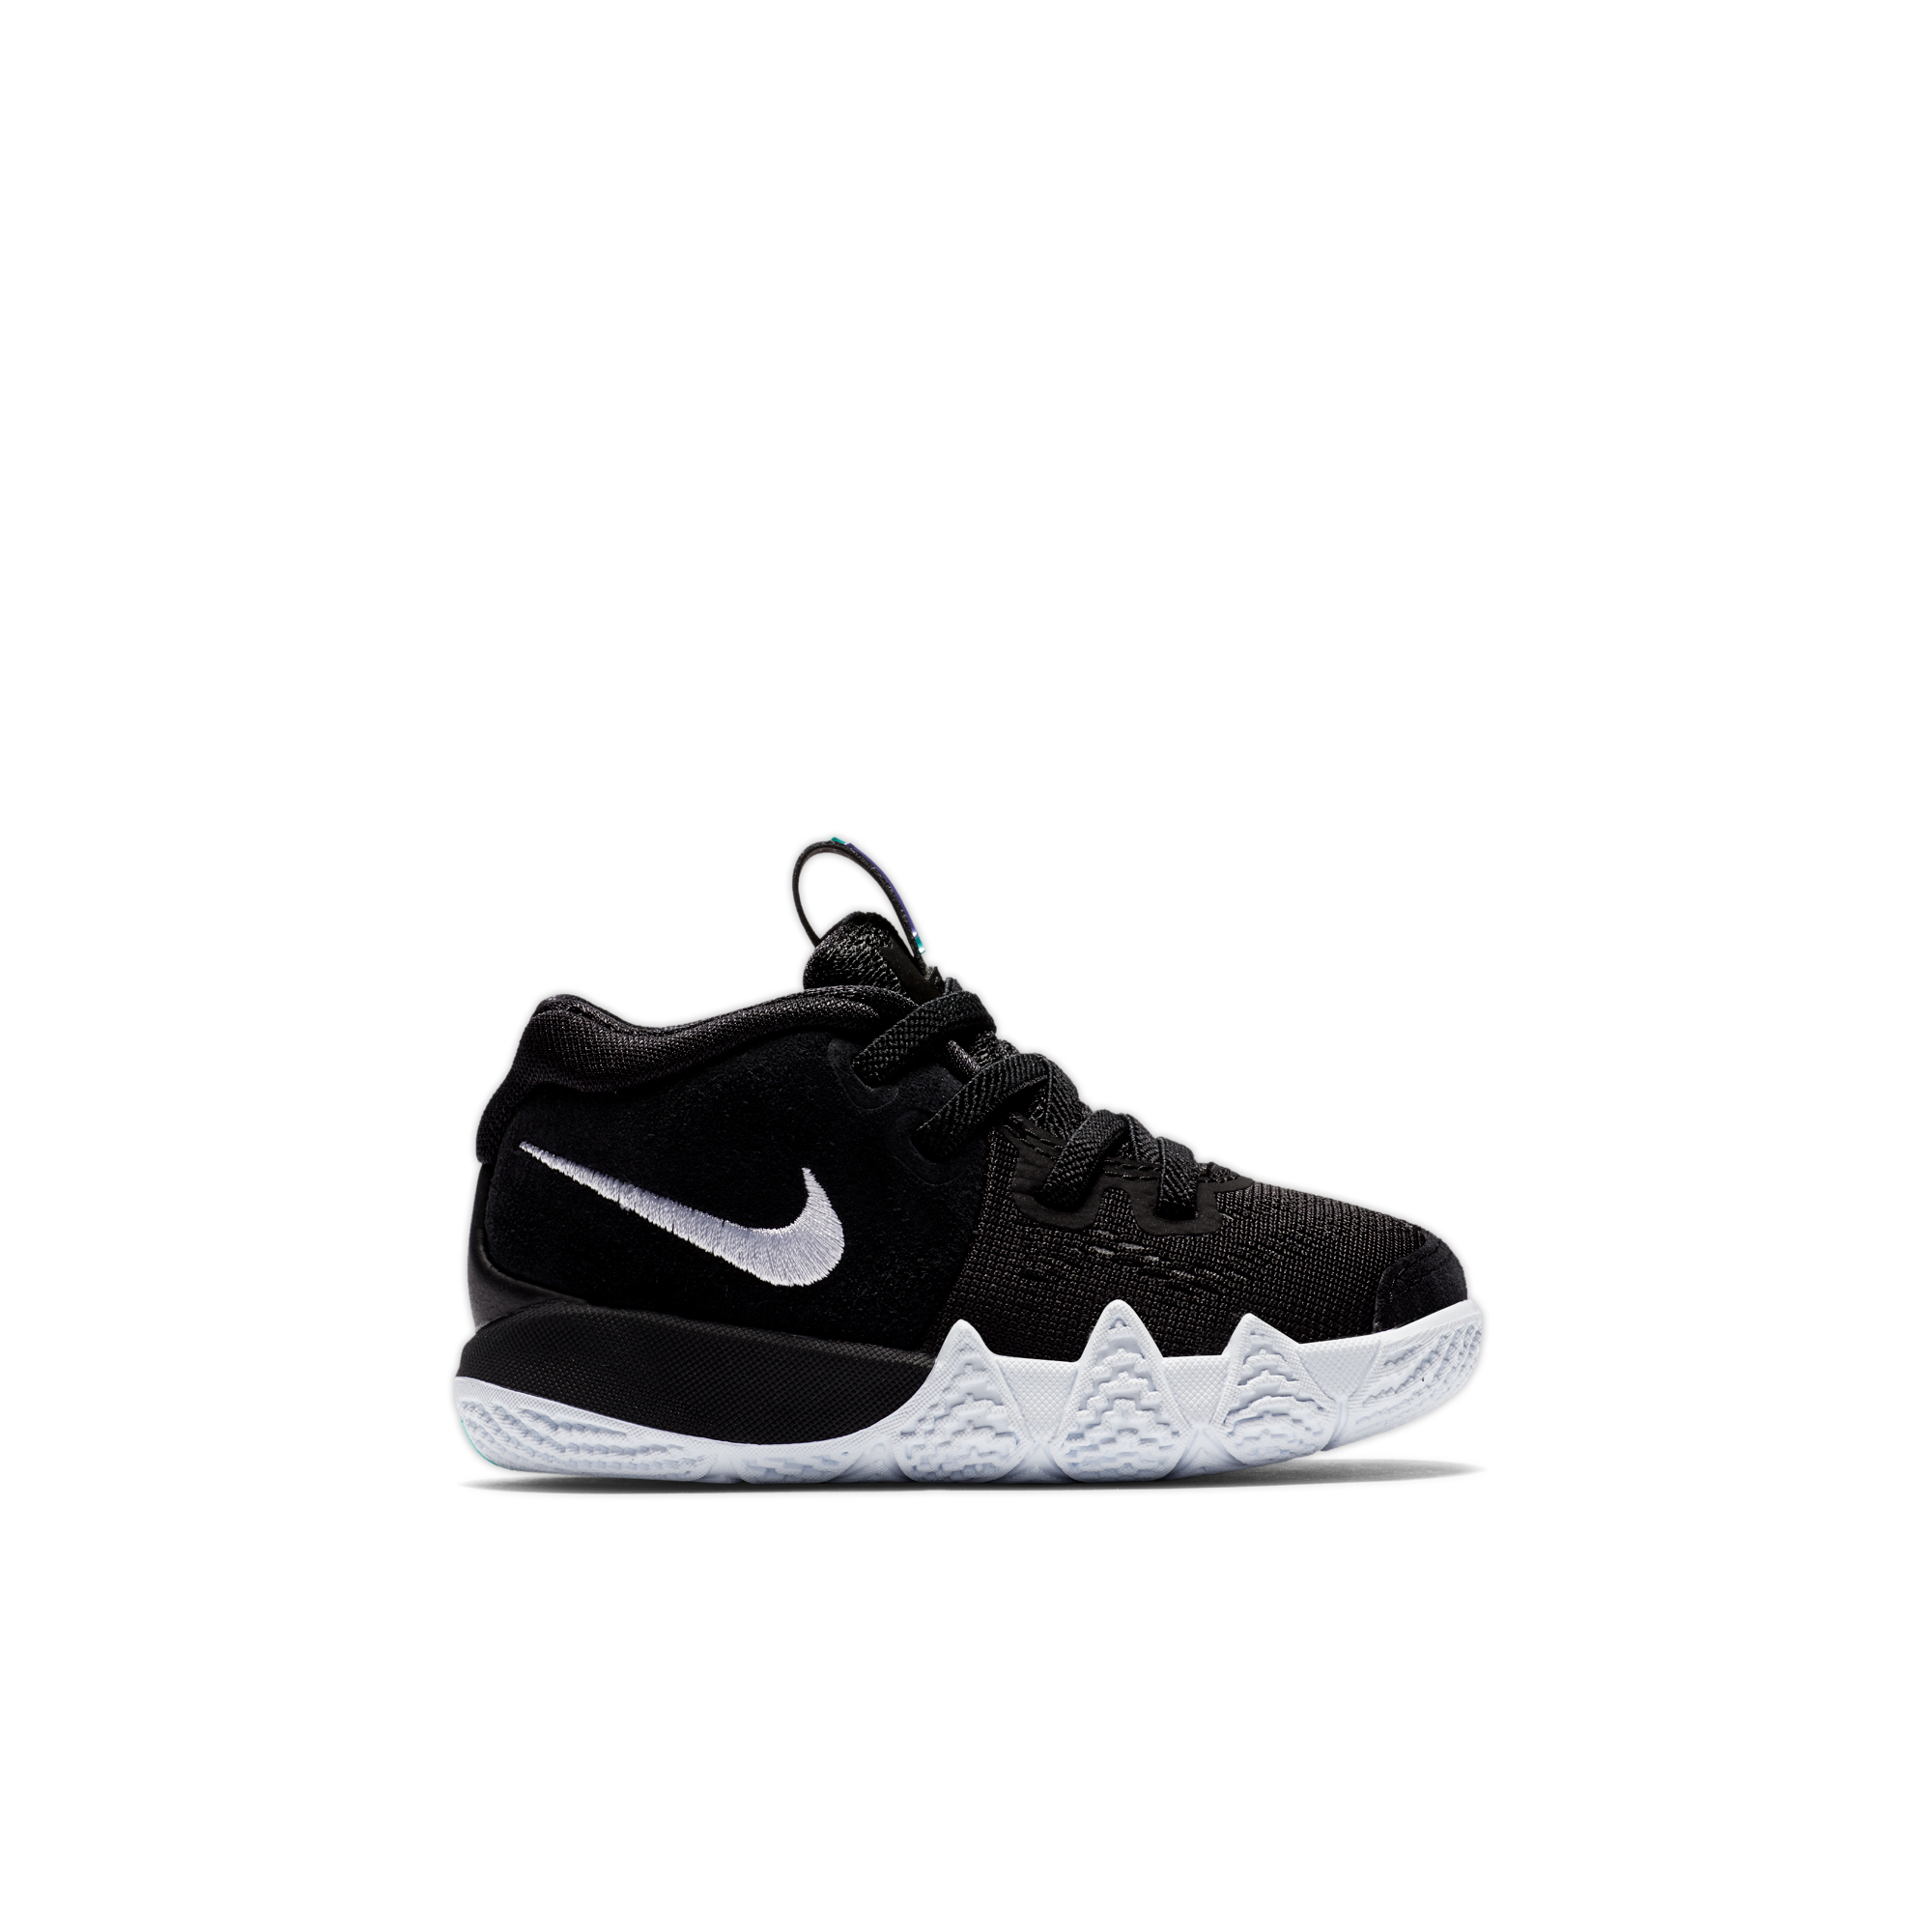 Nike Kyrie 5 Modelleri Erkek Basketbol Ayakkabıları Renkli